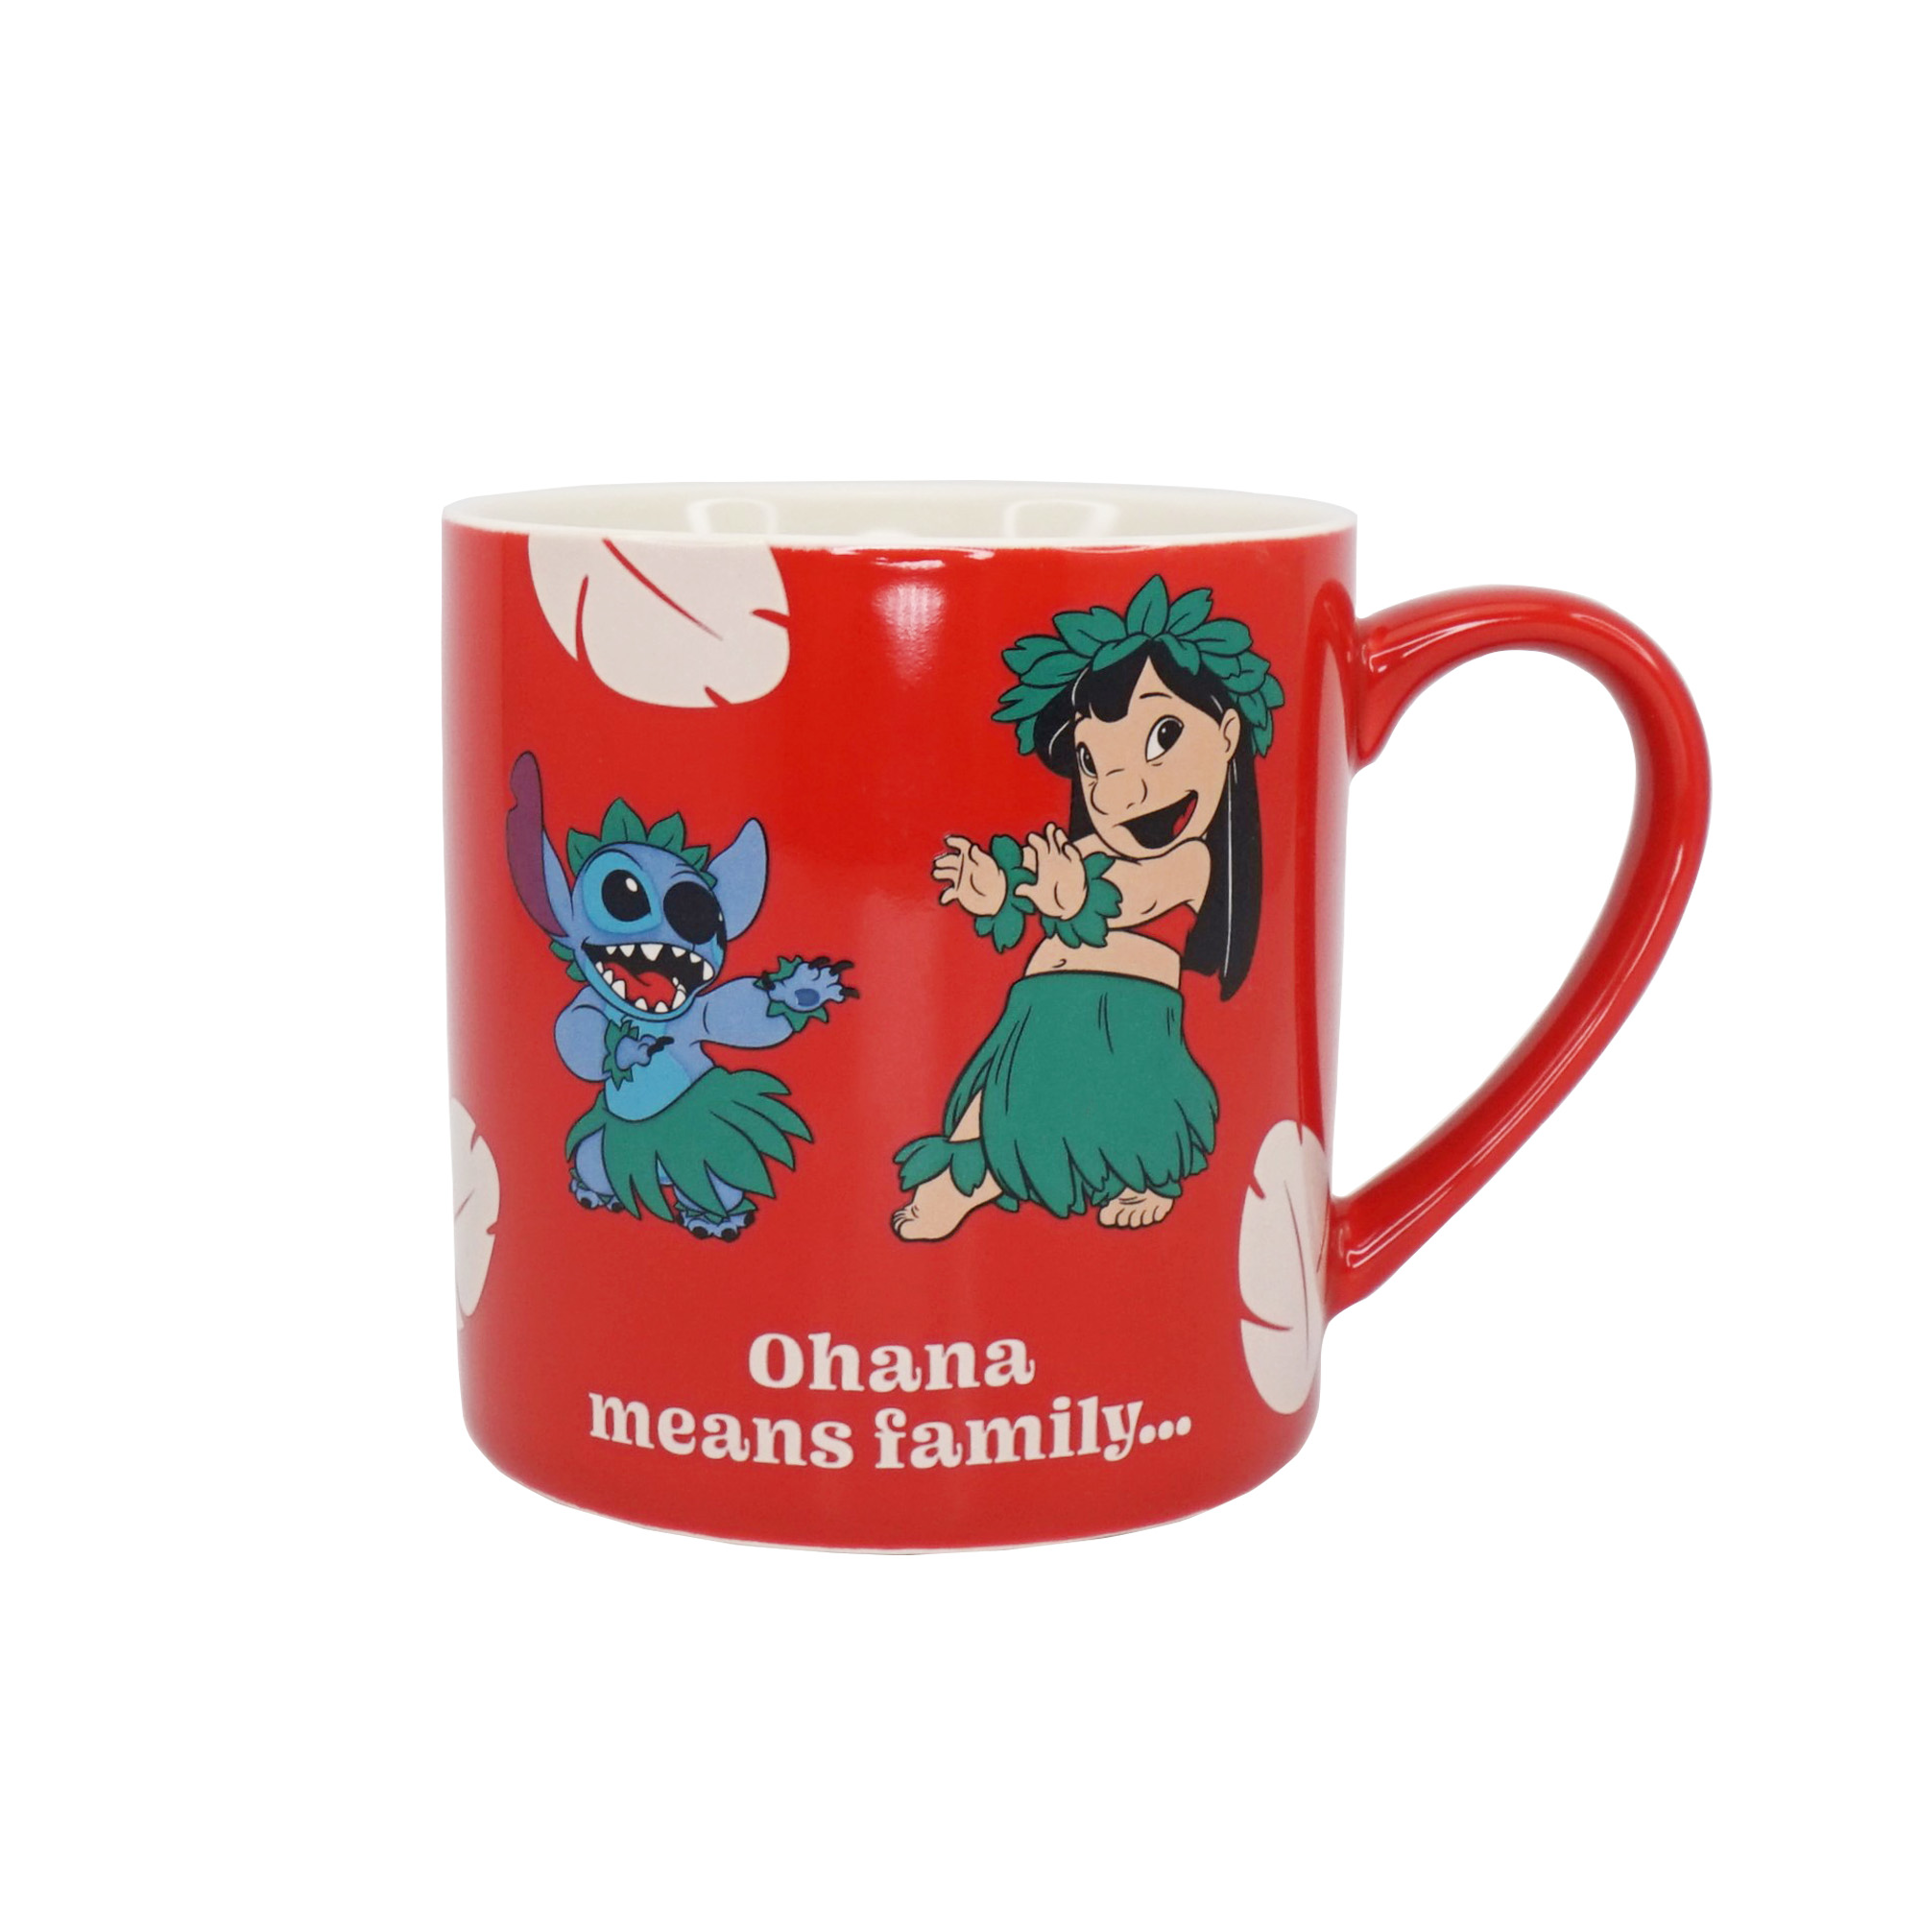 Disney - Mug classique Lilo et Stitch "Ohana means family..." 310ml